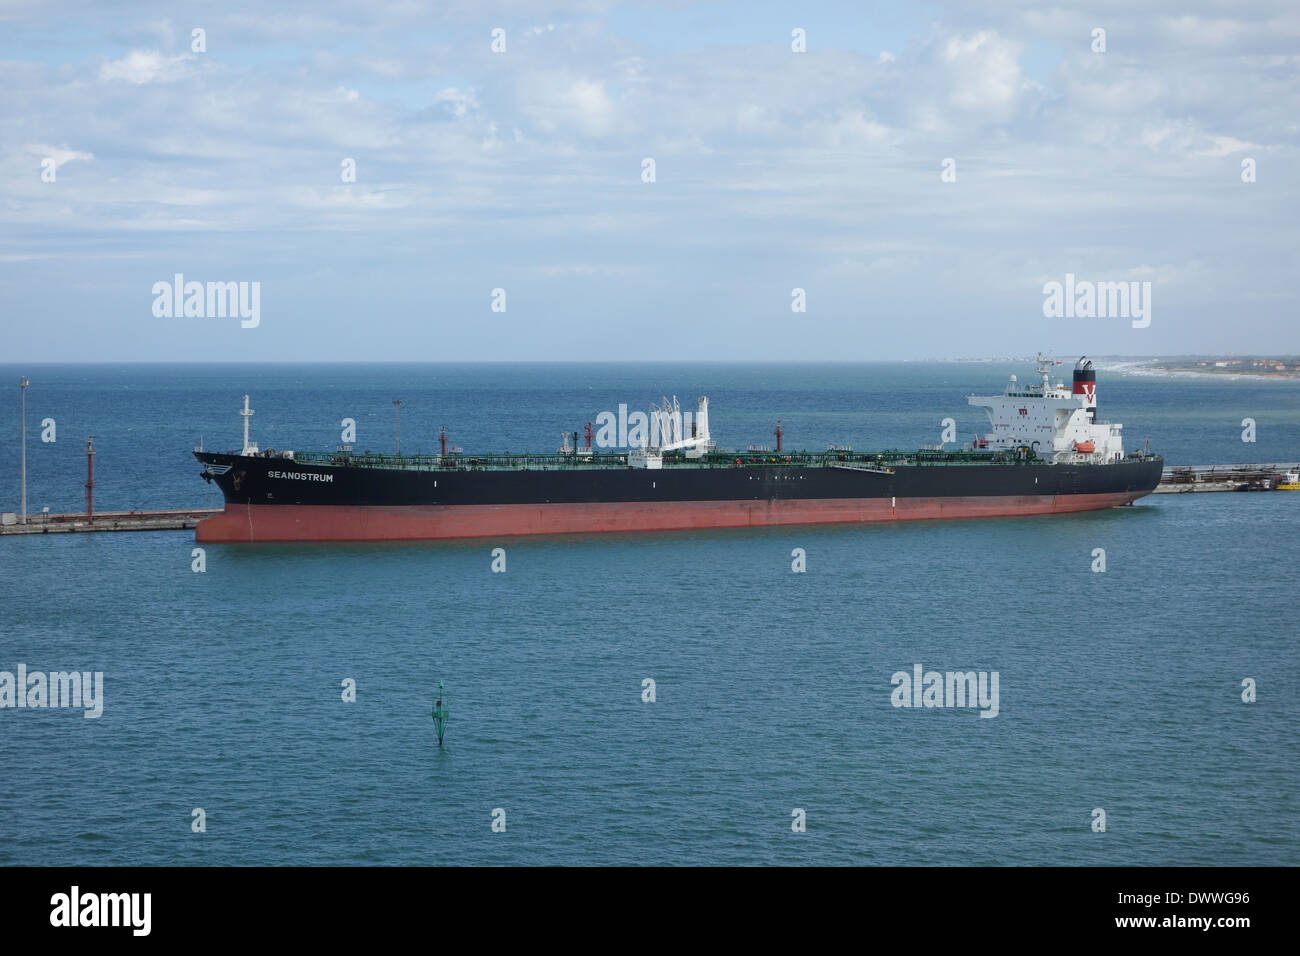 Super tanker mv Seanostrum alongside in Livorno harbor Italy Stock Photo